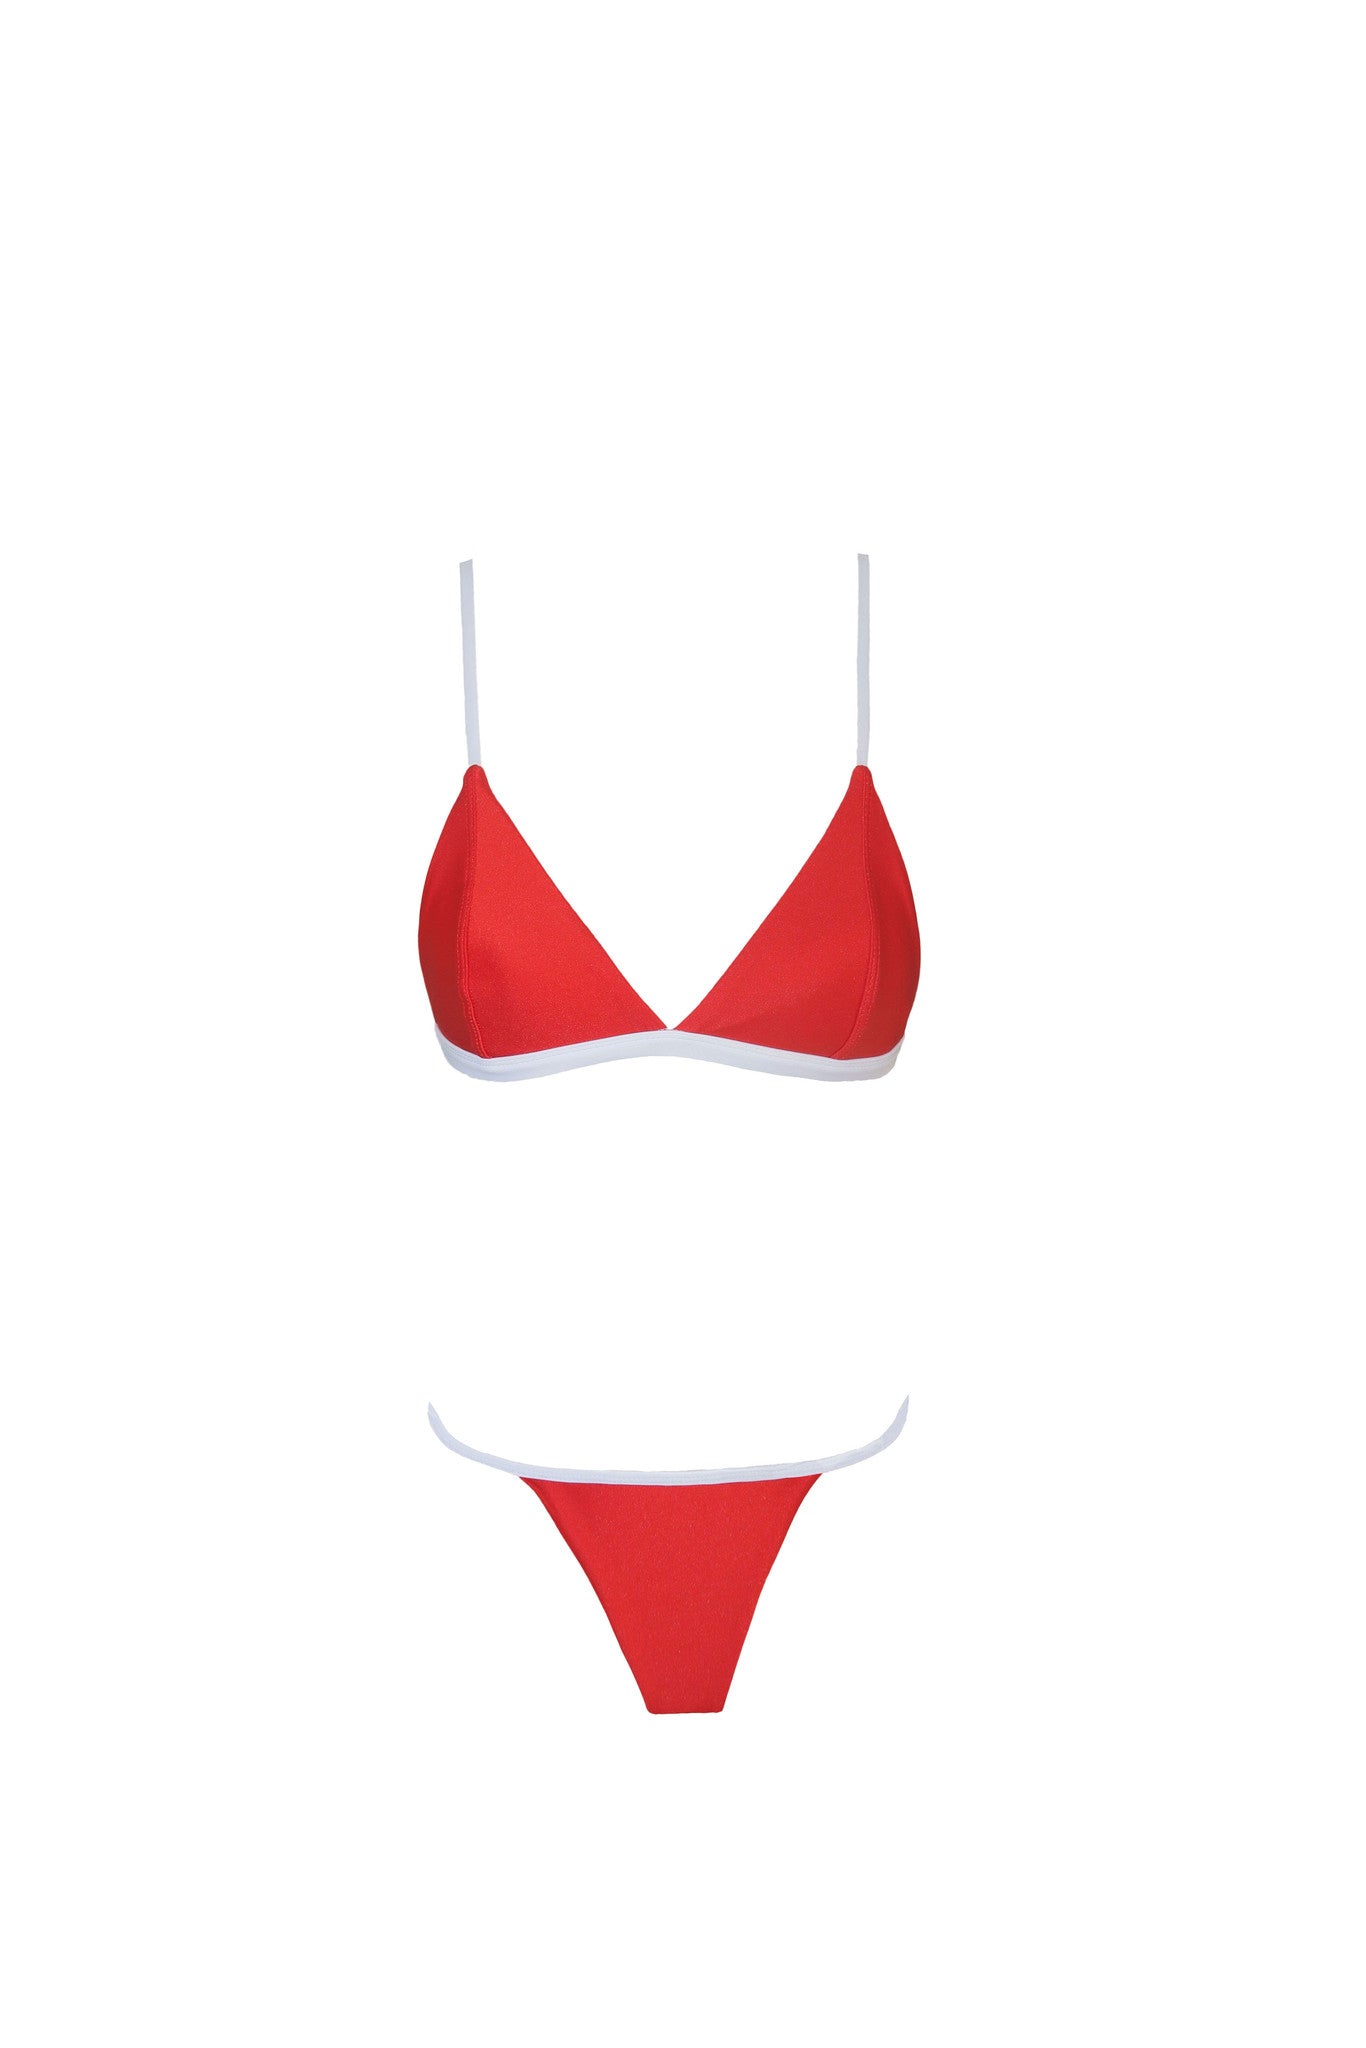 frankie swimwear frankii swim darling bralette red and white two tone bikini frankieswimwear frankieswim 